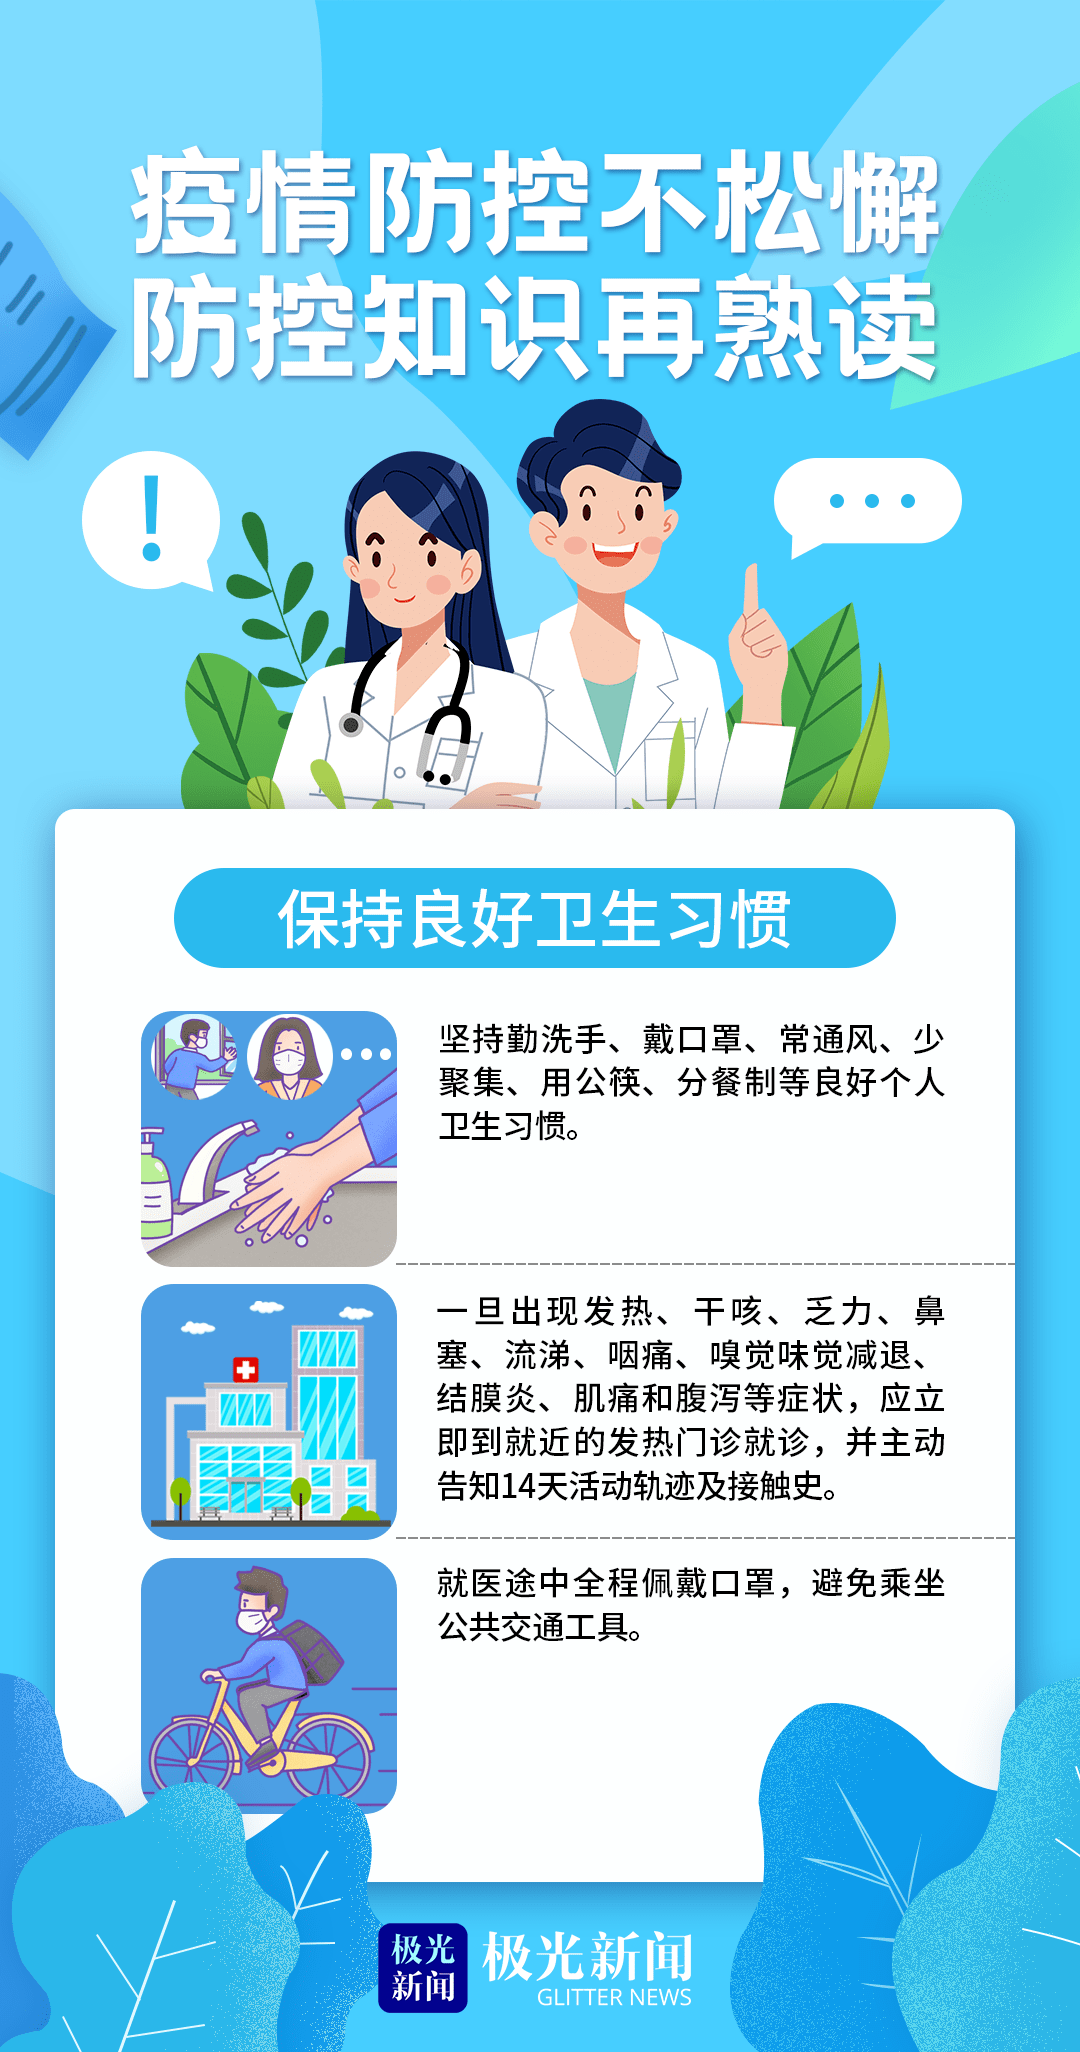 关于北京儿童医院代挂陪诊服务；疫情防控不松懈，日常防护要做好!的信息